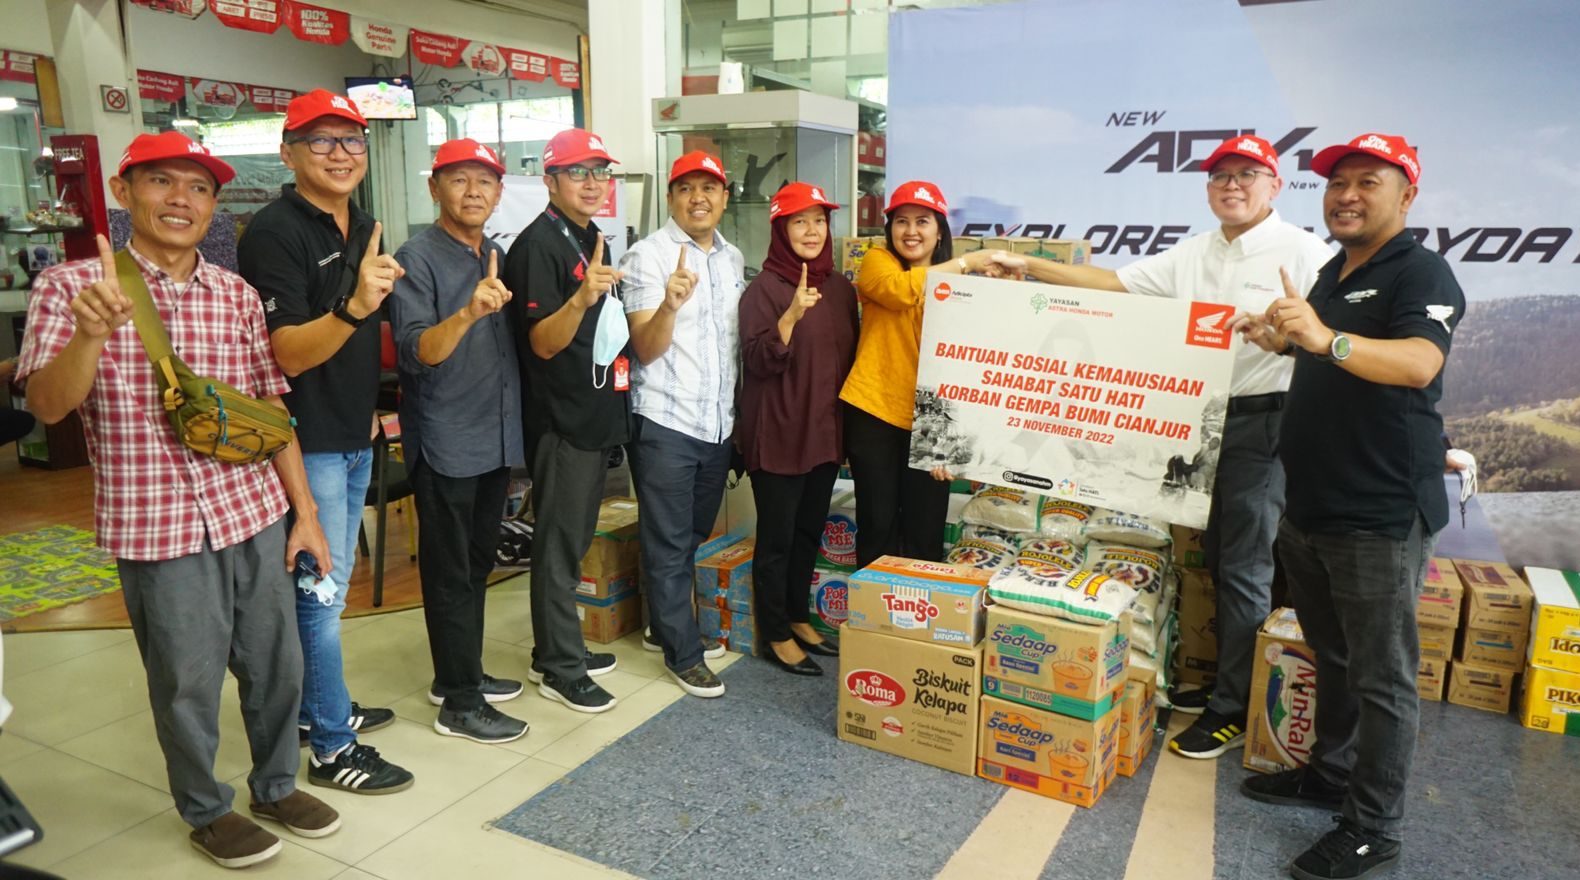 Yayasan AHM dan DAM Bantu Korban Gempa di Cianjur